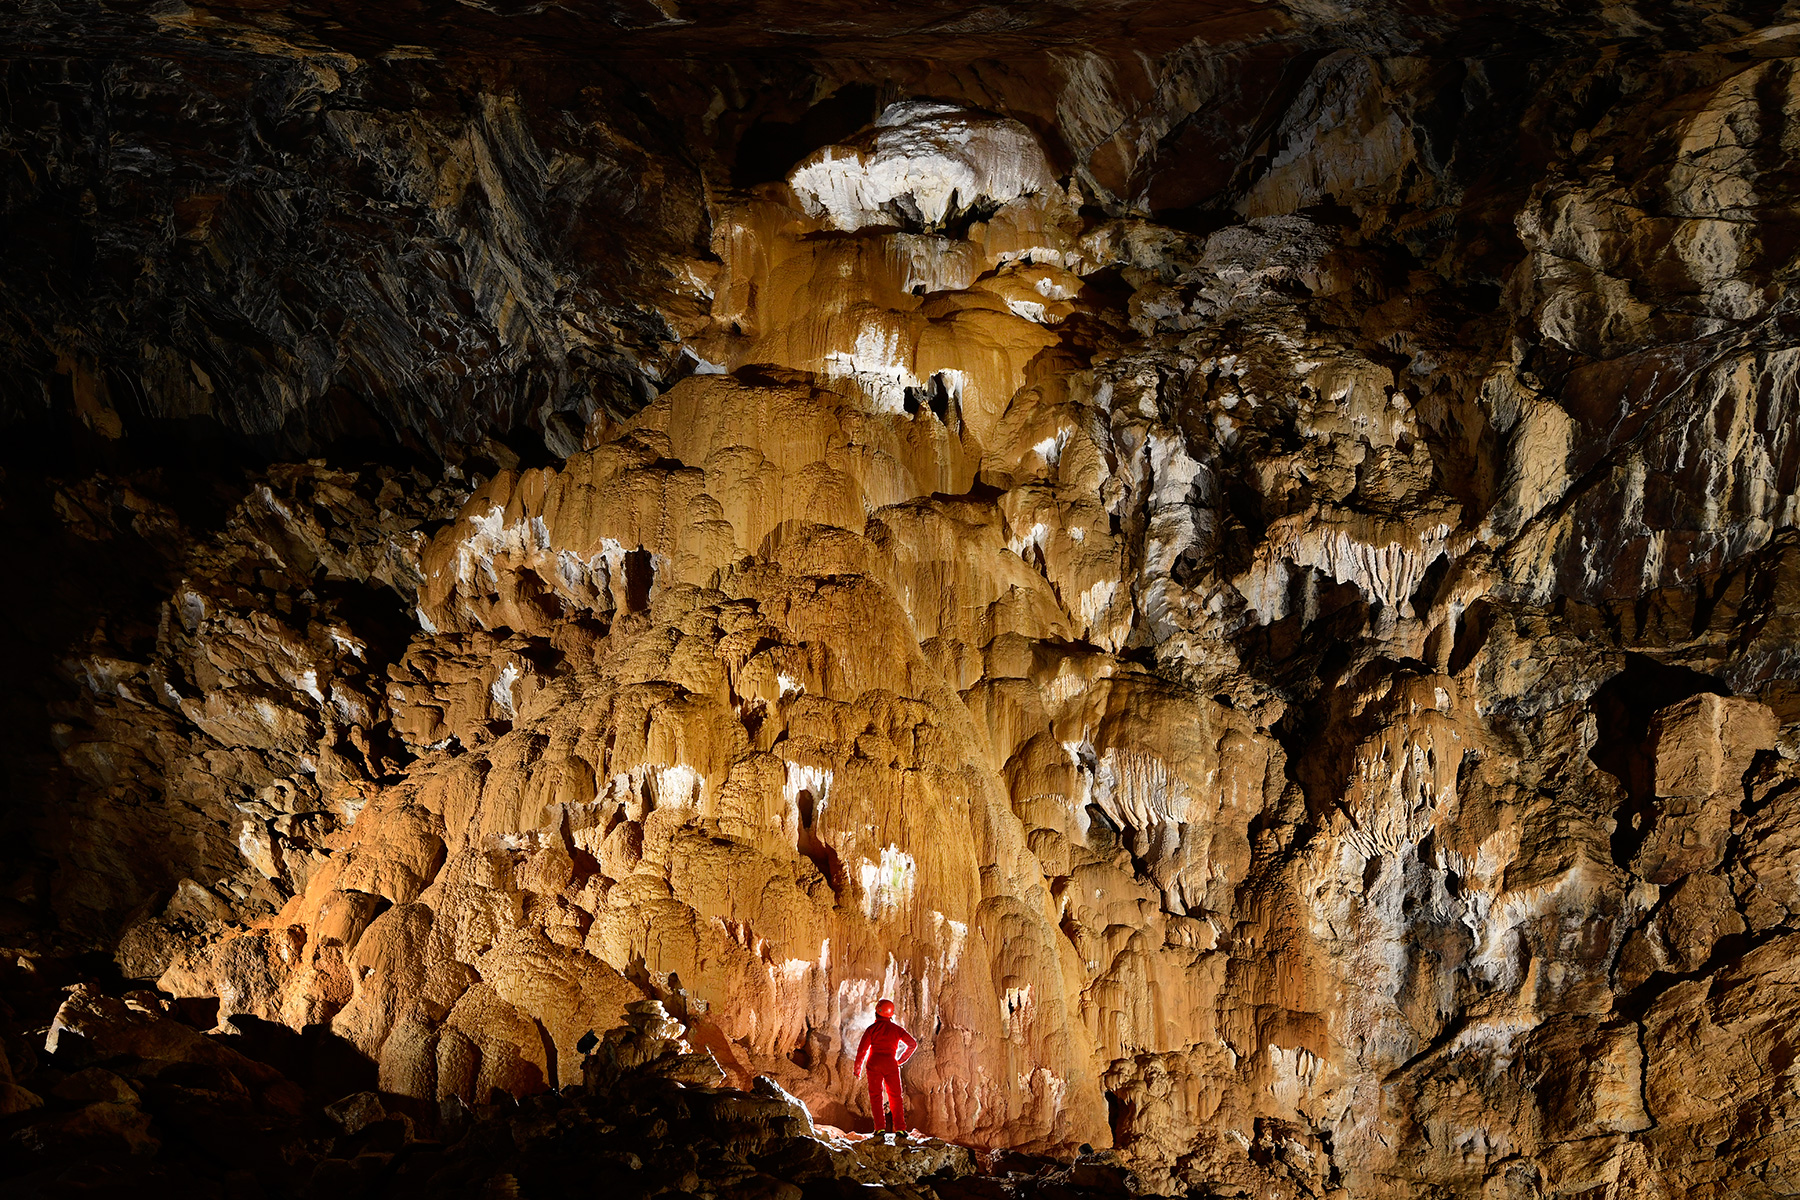 Grotte de Vallorbe (Suisse) - Dépôts de moonmilk (provenant de la décomposition des carbonates). Ils sont recouverts d'une couche de calcite orange.